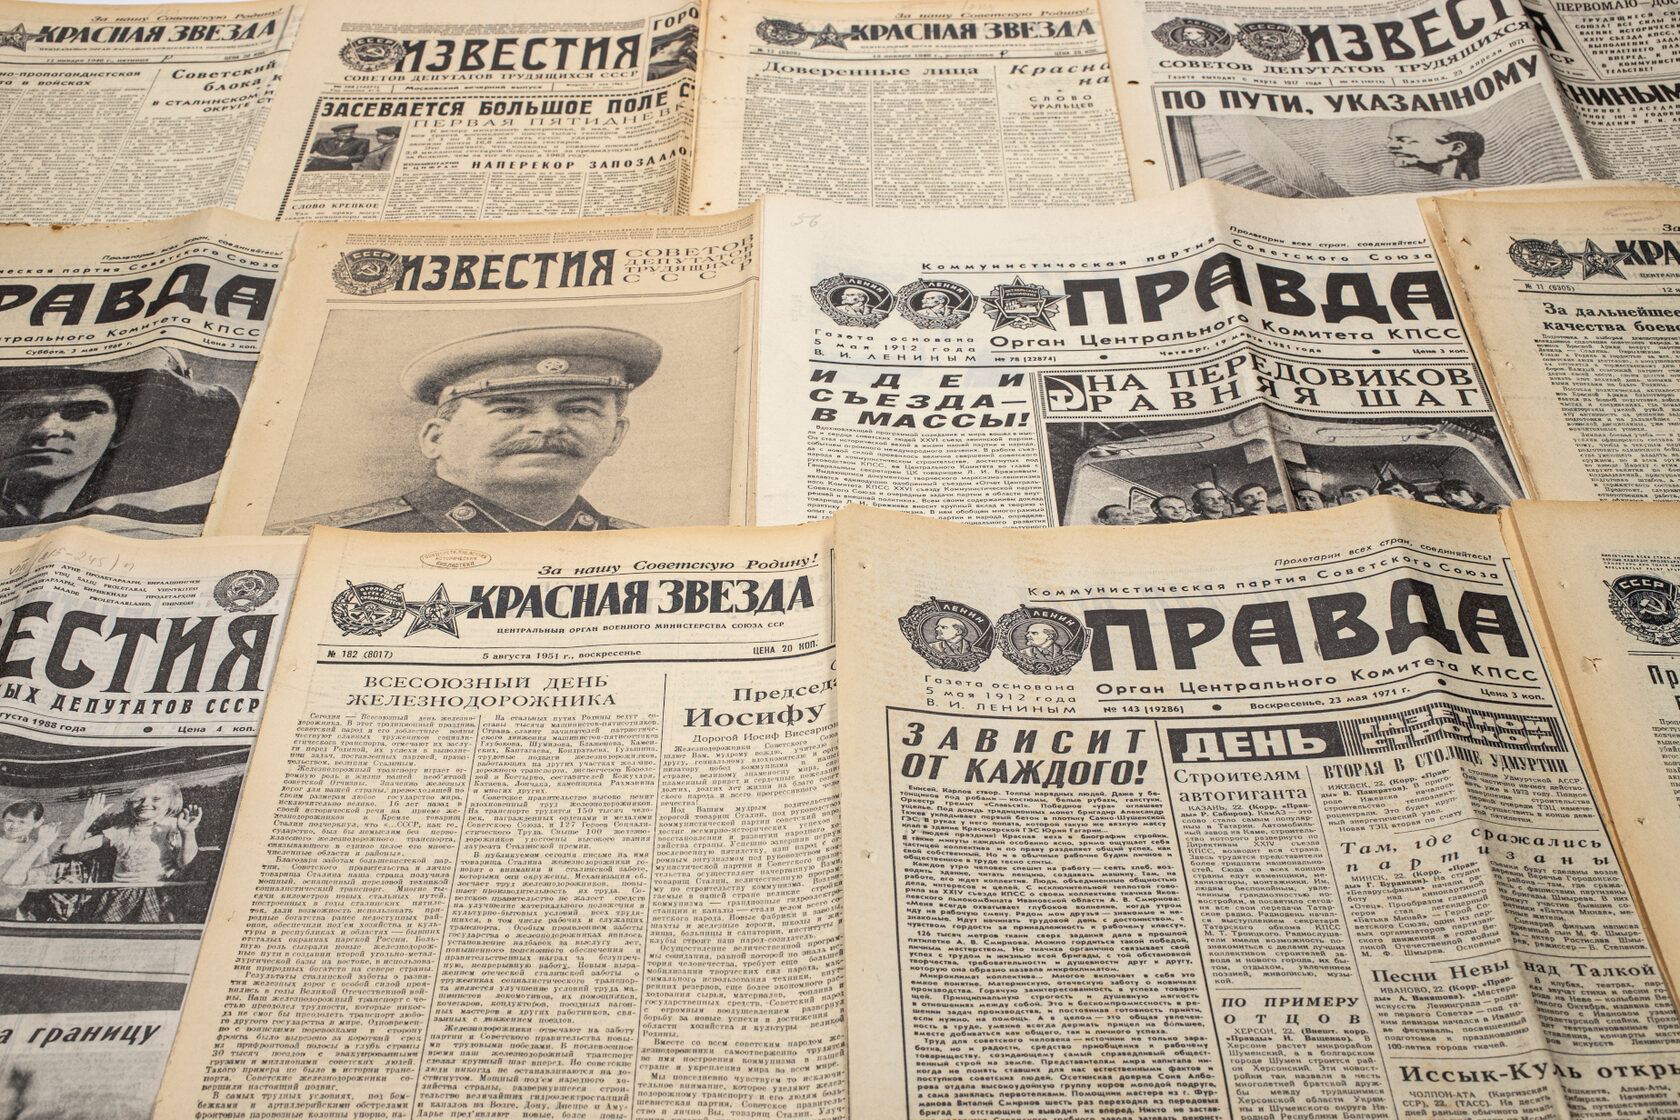 Тематическая подборка старых советских газет из архива - фото